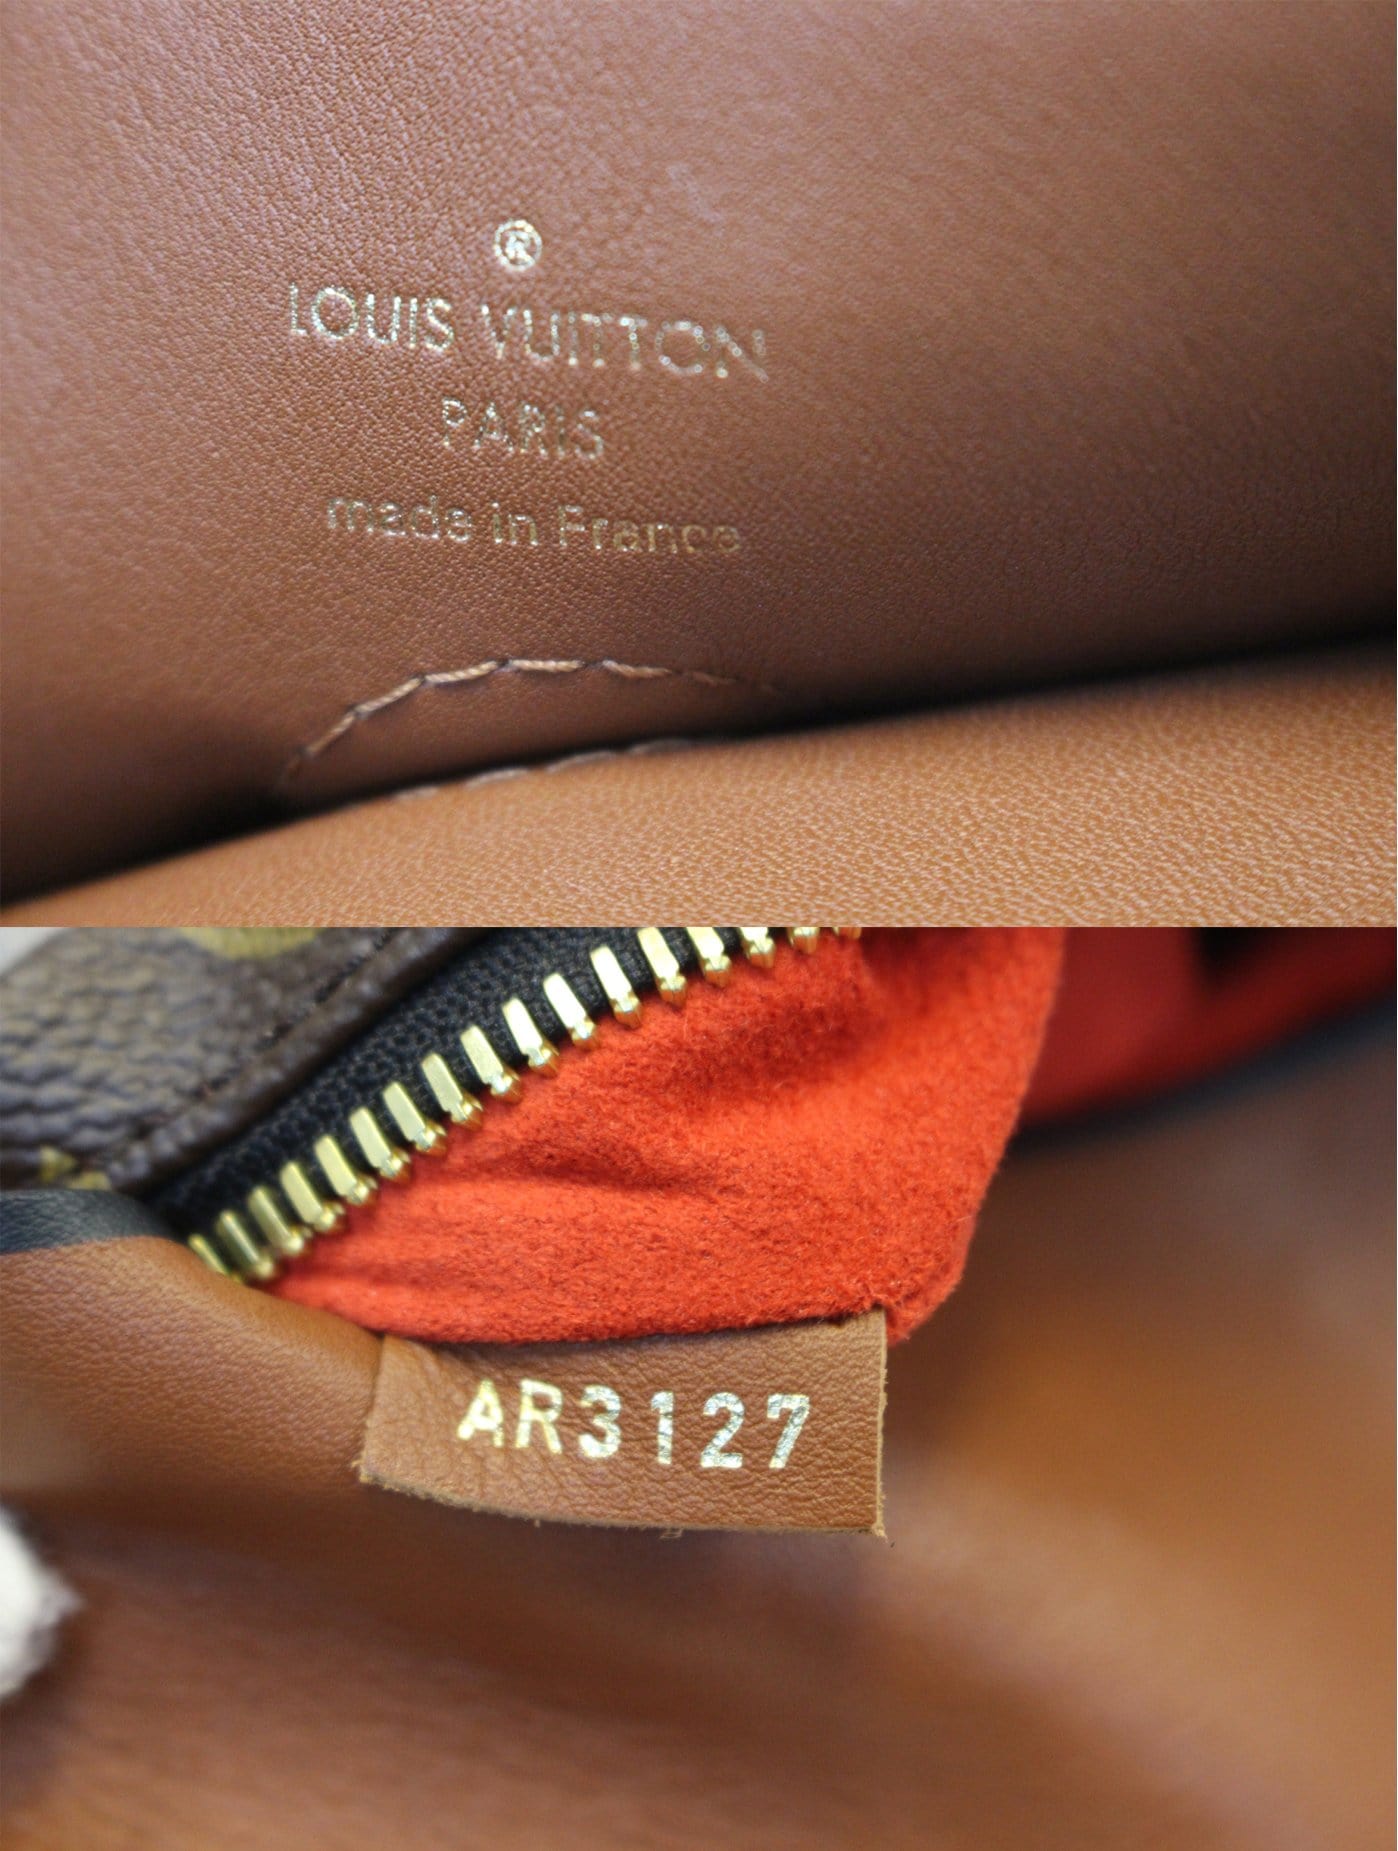 LOUIS VUITTON Tuileries Besace Monogram Canvas Shoulder Bag Caramel